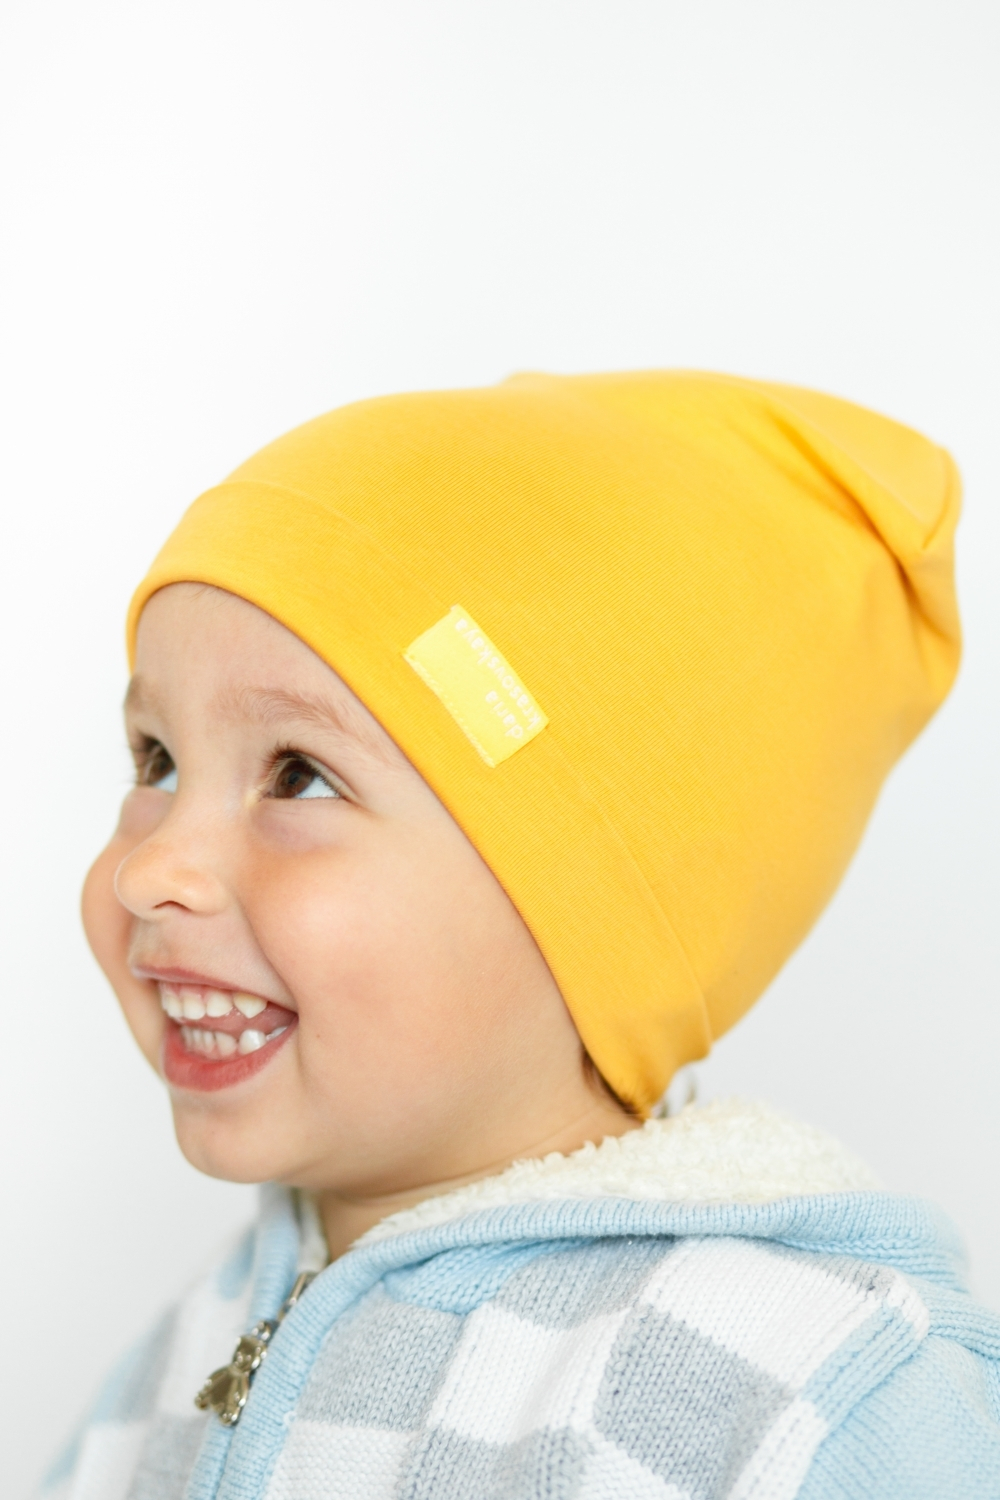 Детская шапка хлопковая гладкая тонкая горчичная желтая